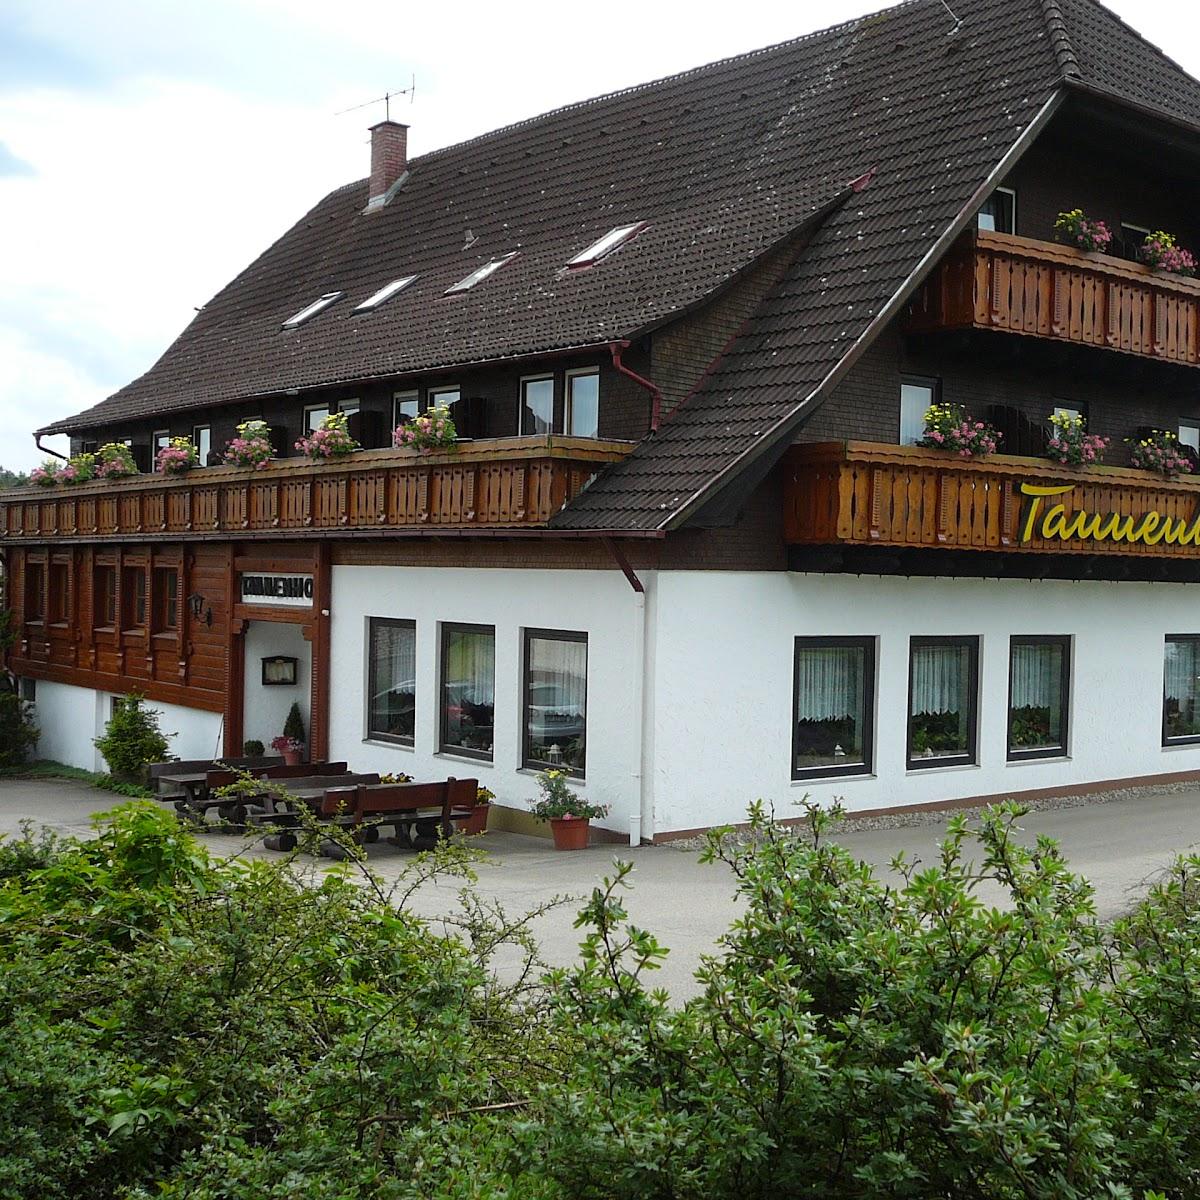 Restaurant "Gasthaus Tannenhof" in Seewald